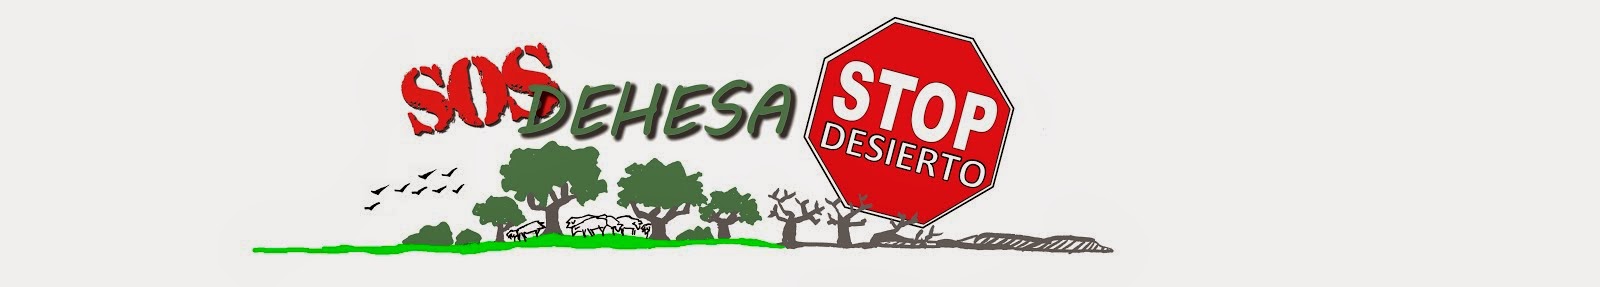 SOS dehesa - STOP desierto